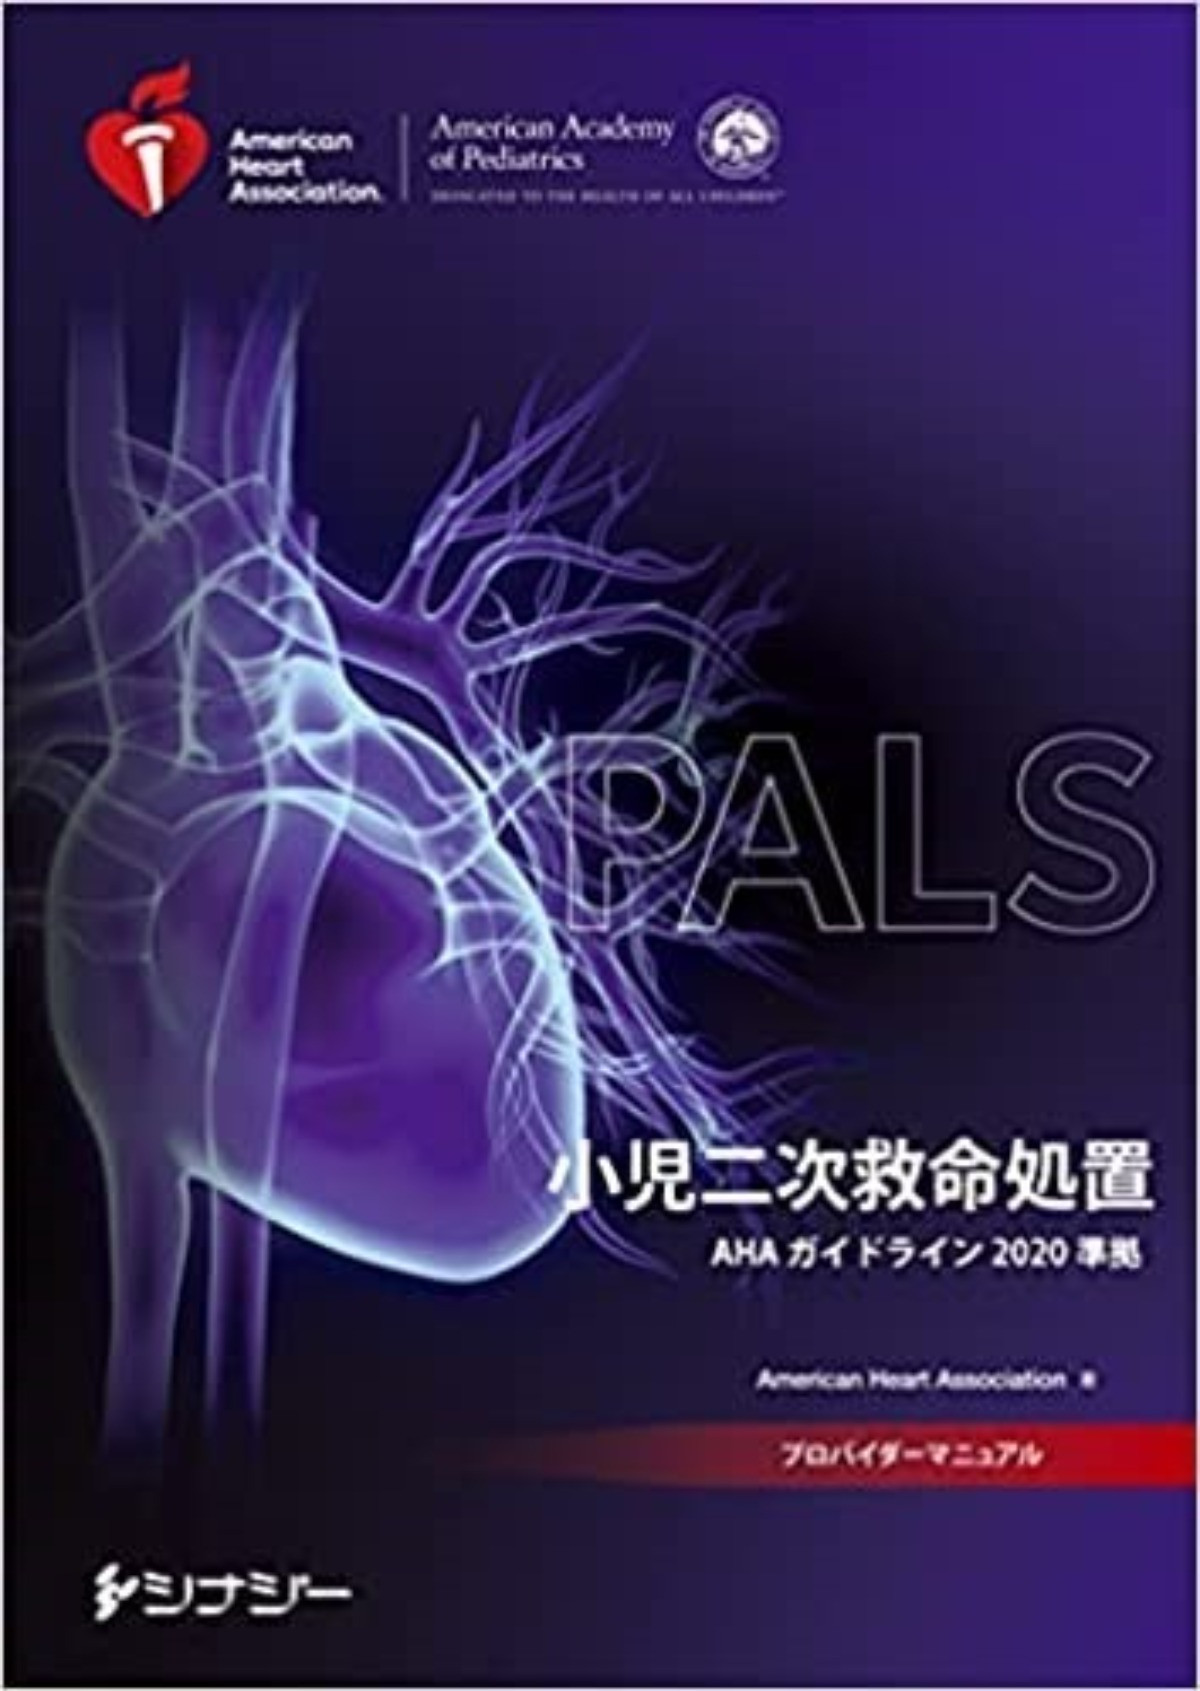 AHA小児二次救命処置（PALS）ガイドライン2020準拠の日本語版が発表 